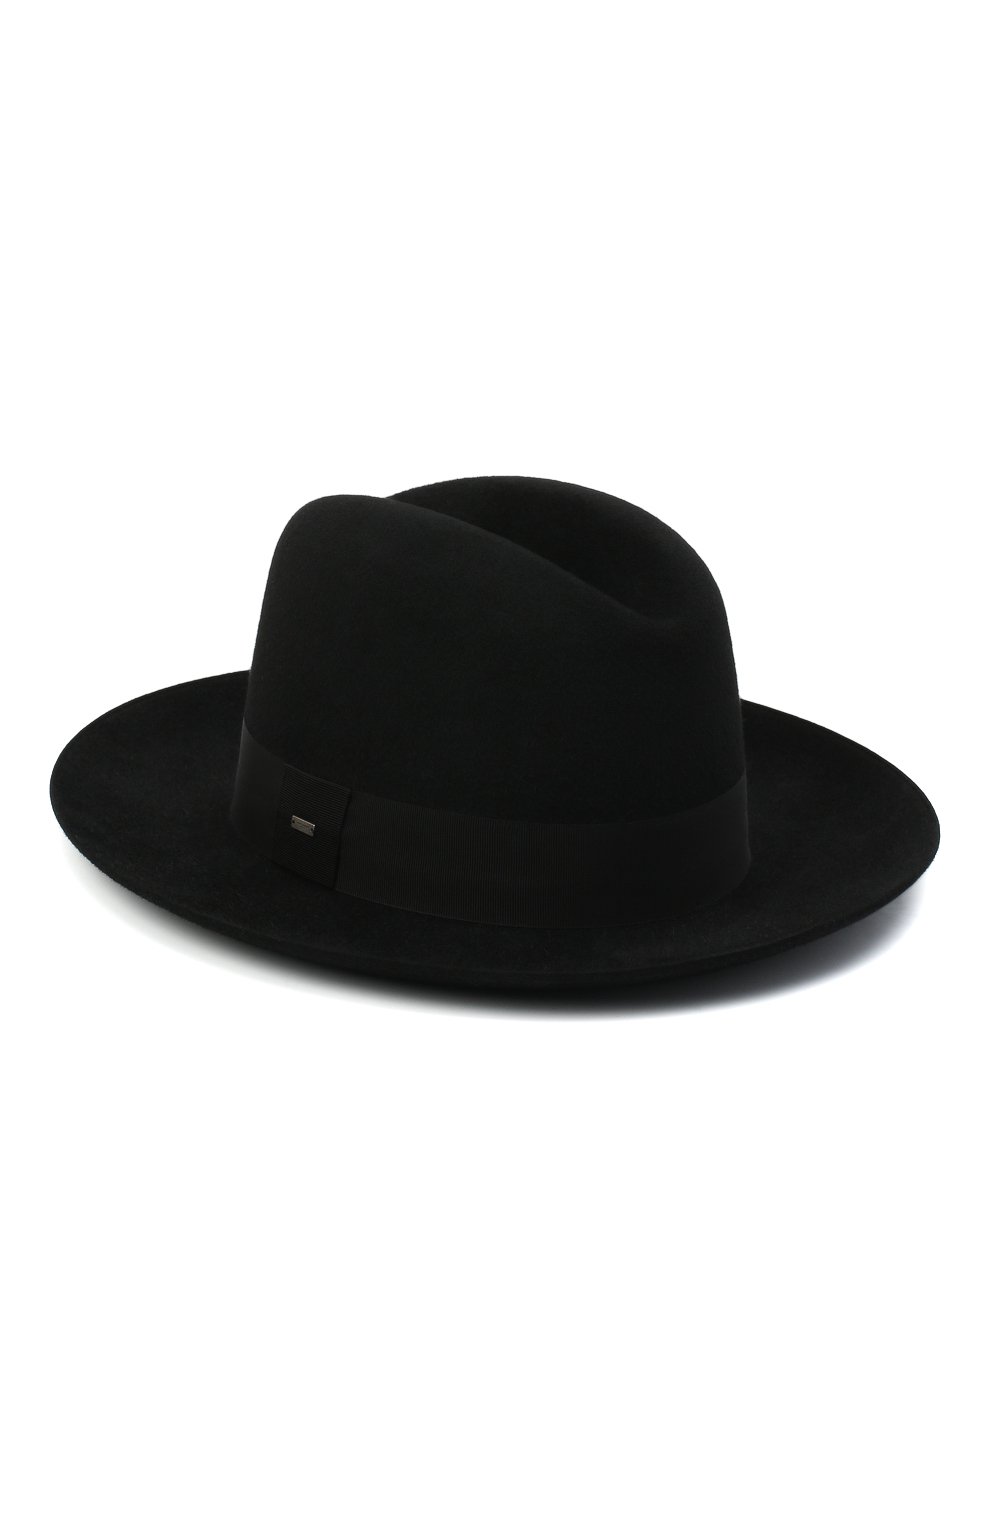 Где купить мужскую шляпу хомбург в Москве?